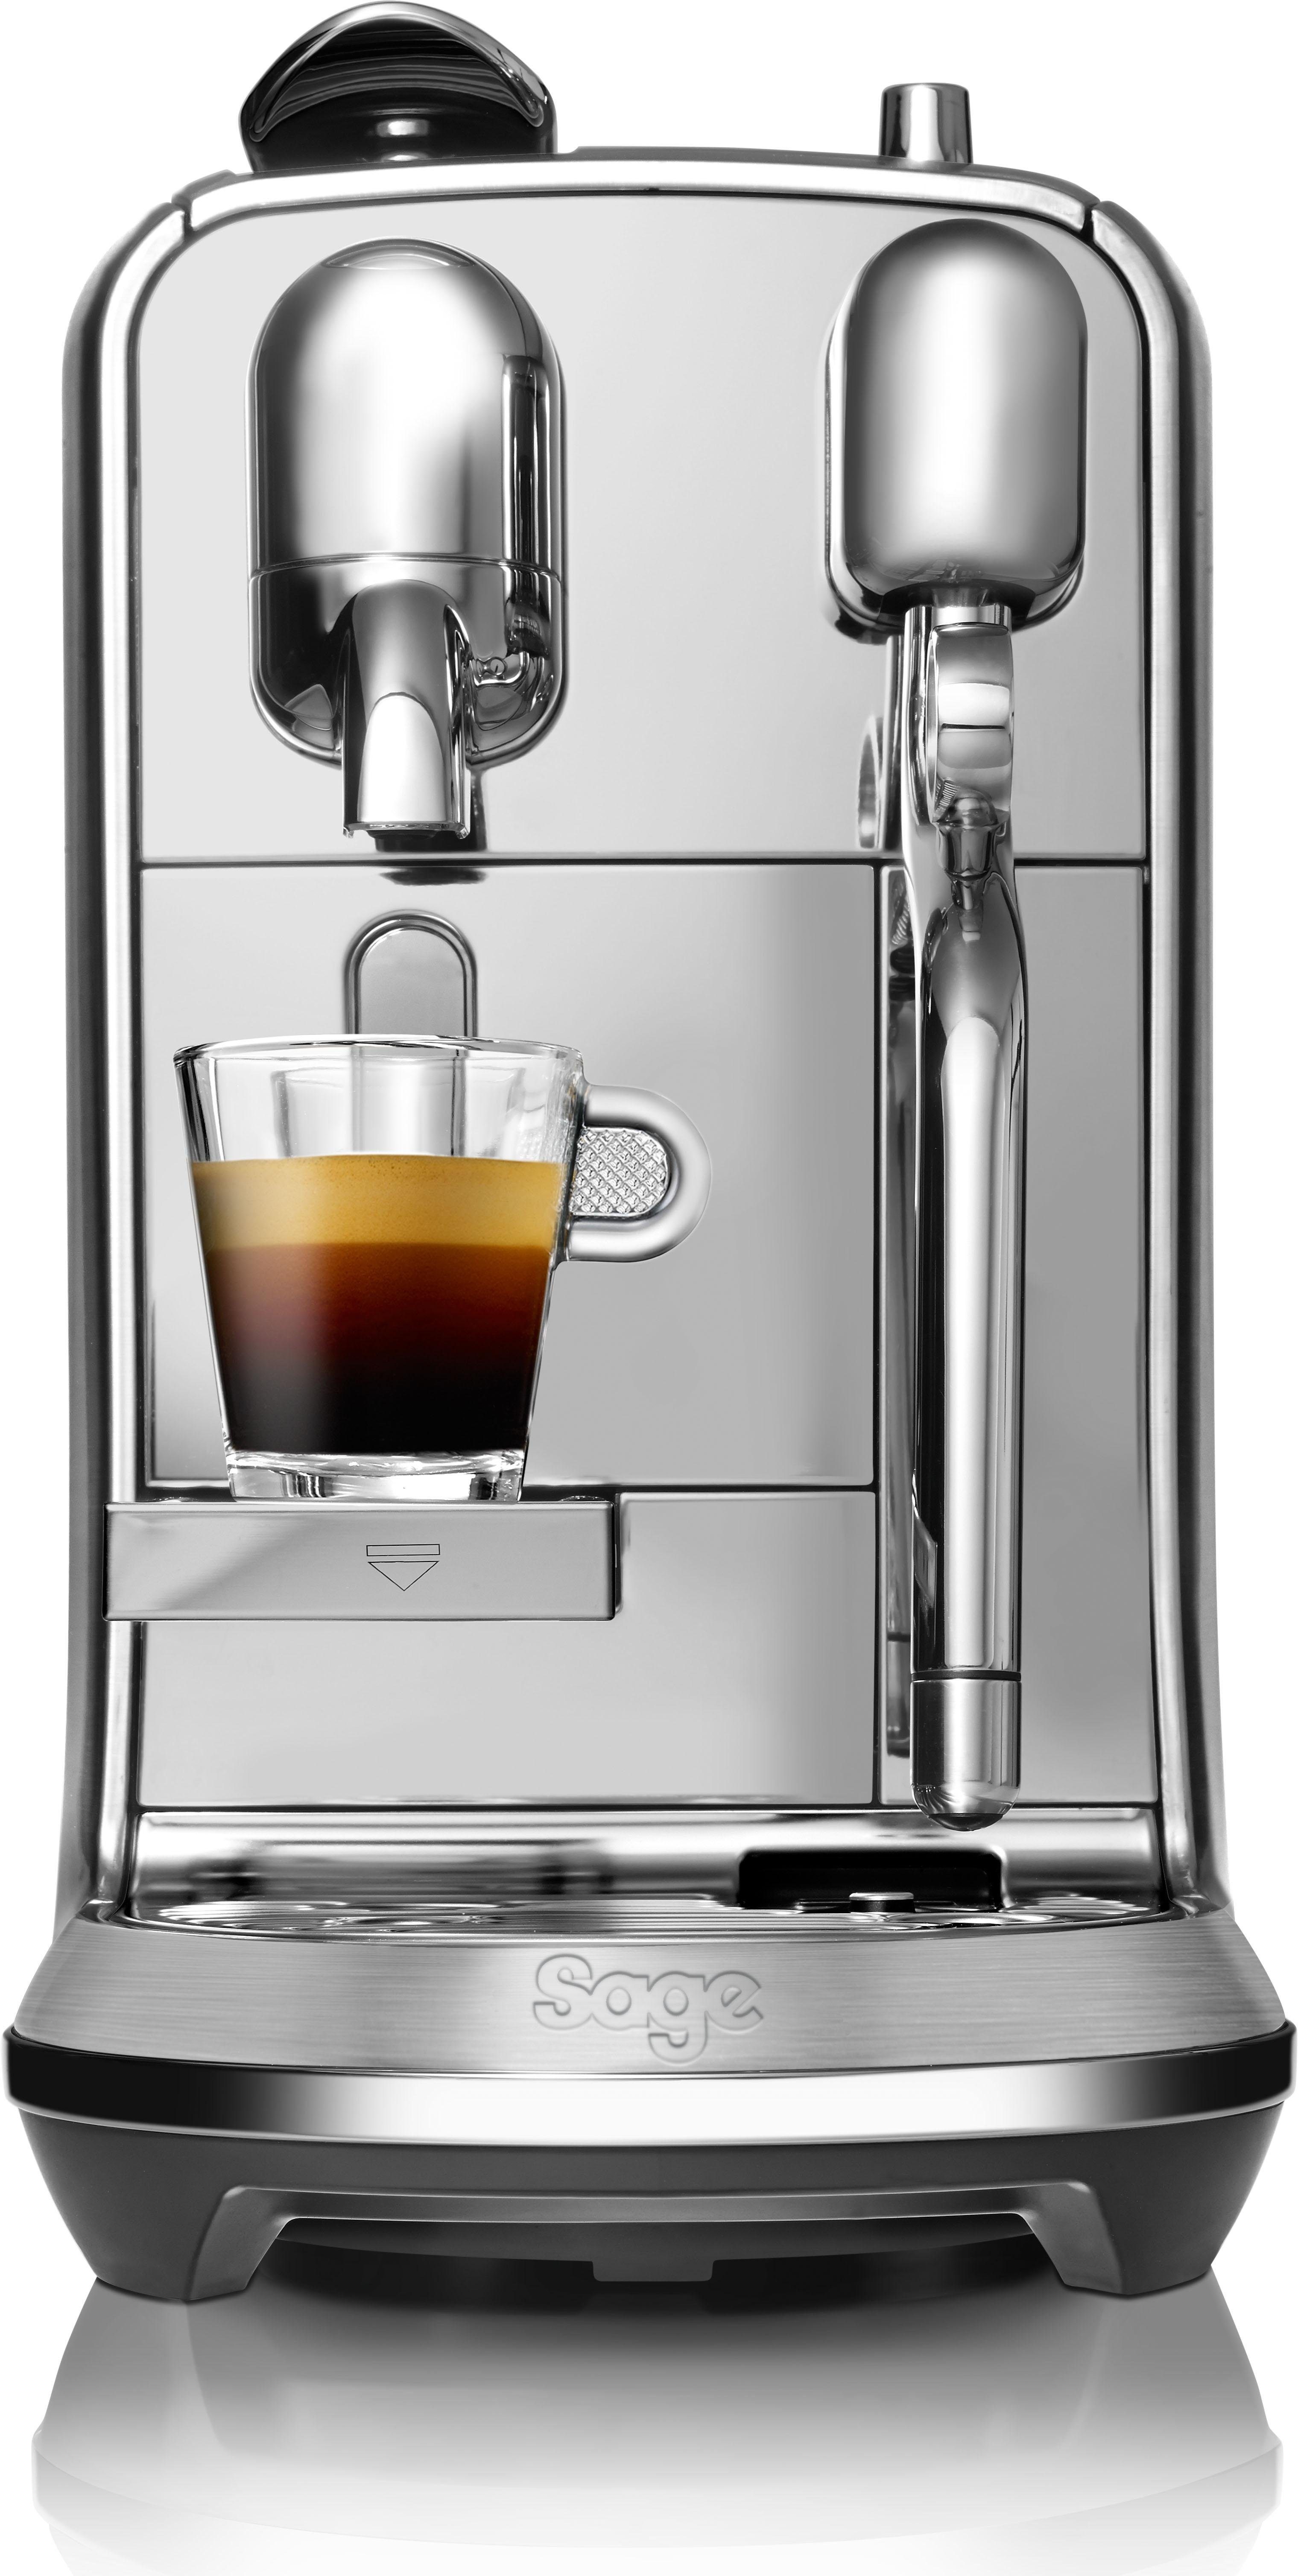 Edelstahl-Milchkanne, Willkommenspaket mit Creatista SNE800 inkl. Nespresso Kapselmaschine Plus mit Kapseln 14